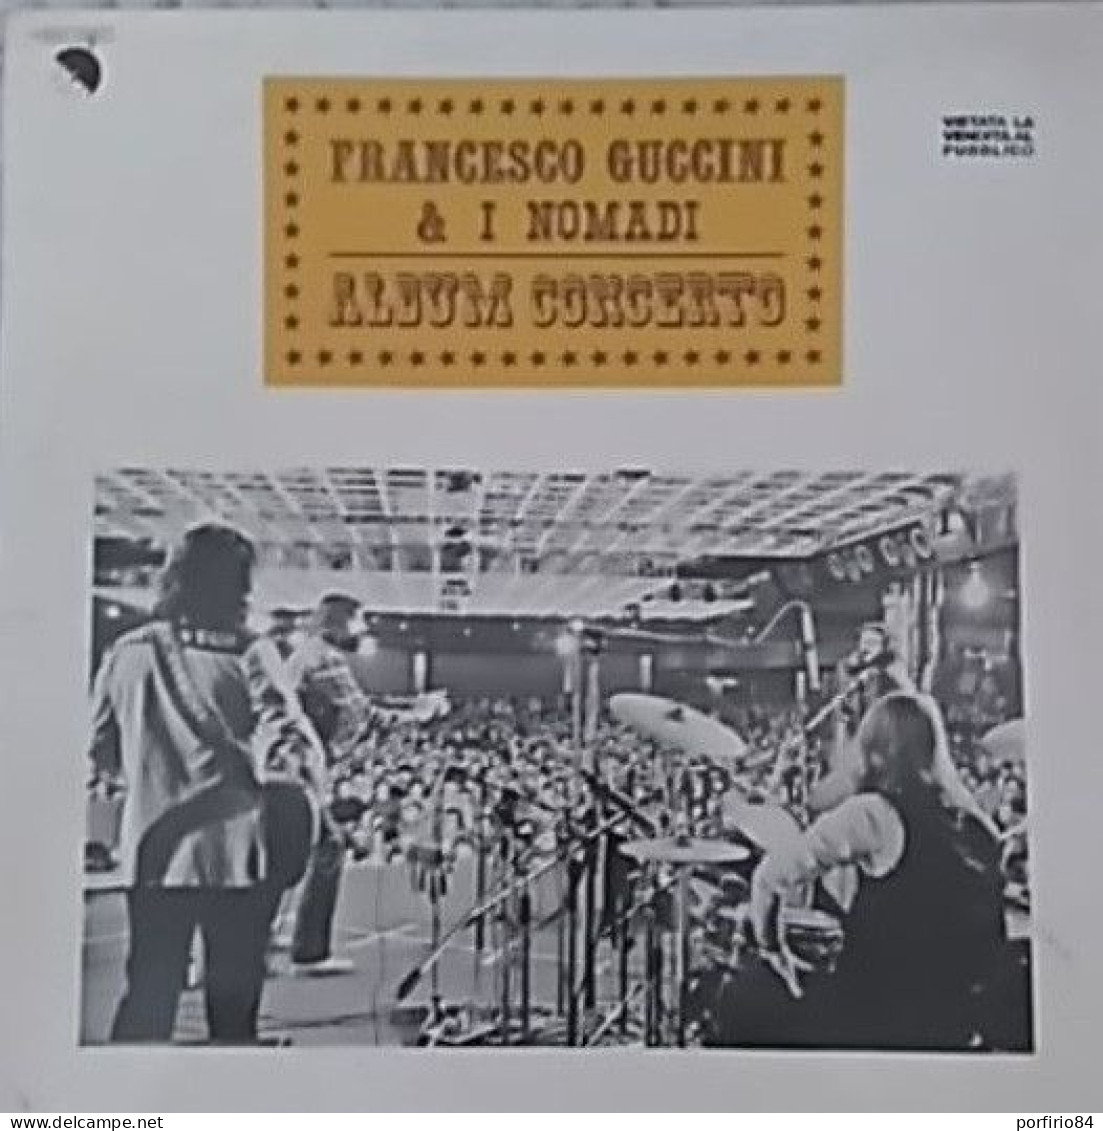 FRANCESCO GUCCINI & I NOMADI ALBUM CONCERTO LP 33 GIRI PROMO DEL 1979 - Sonstige - Italienische Musik